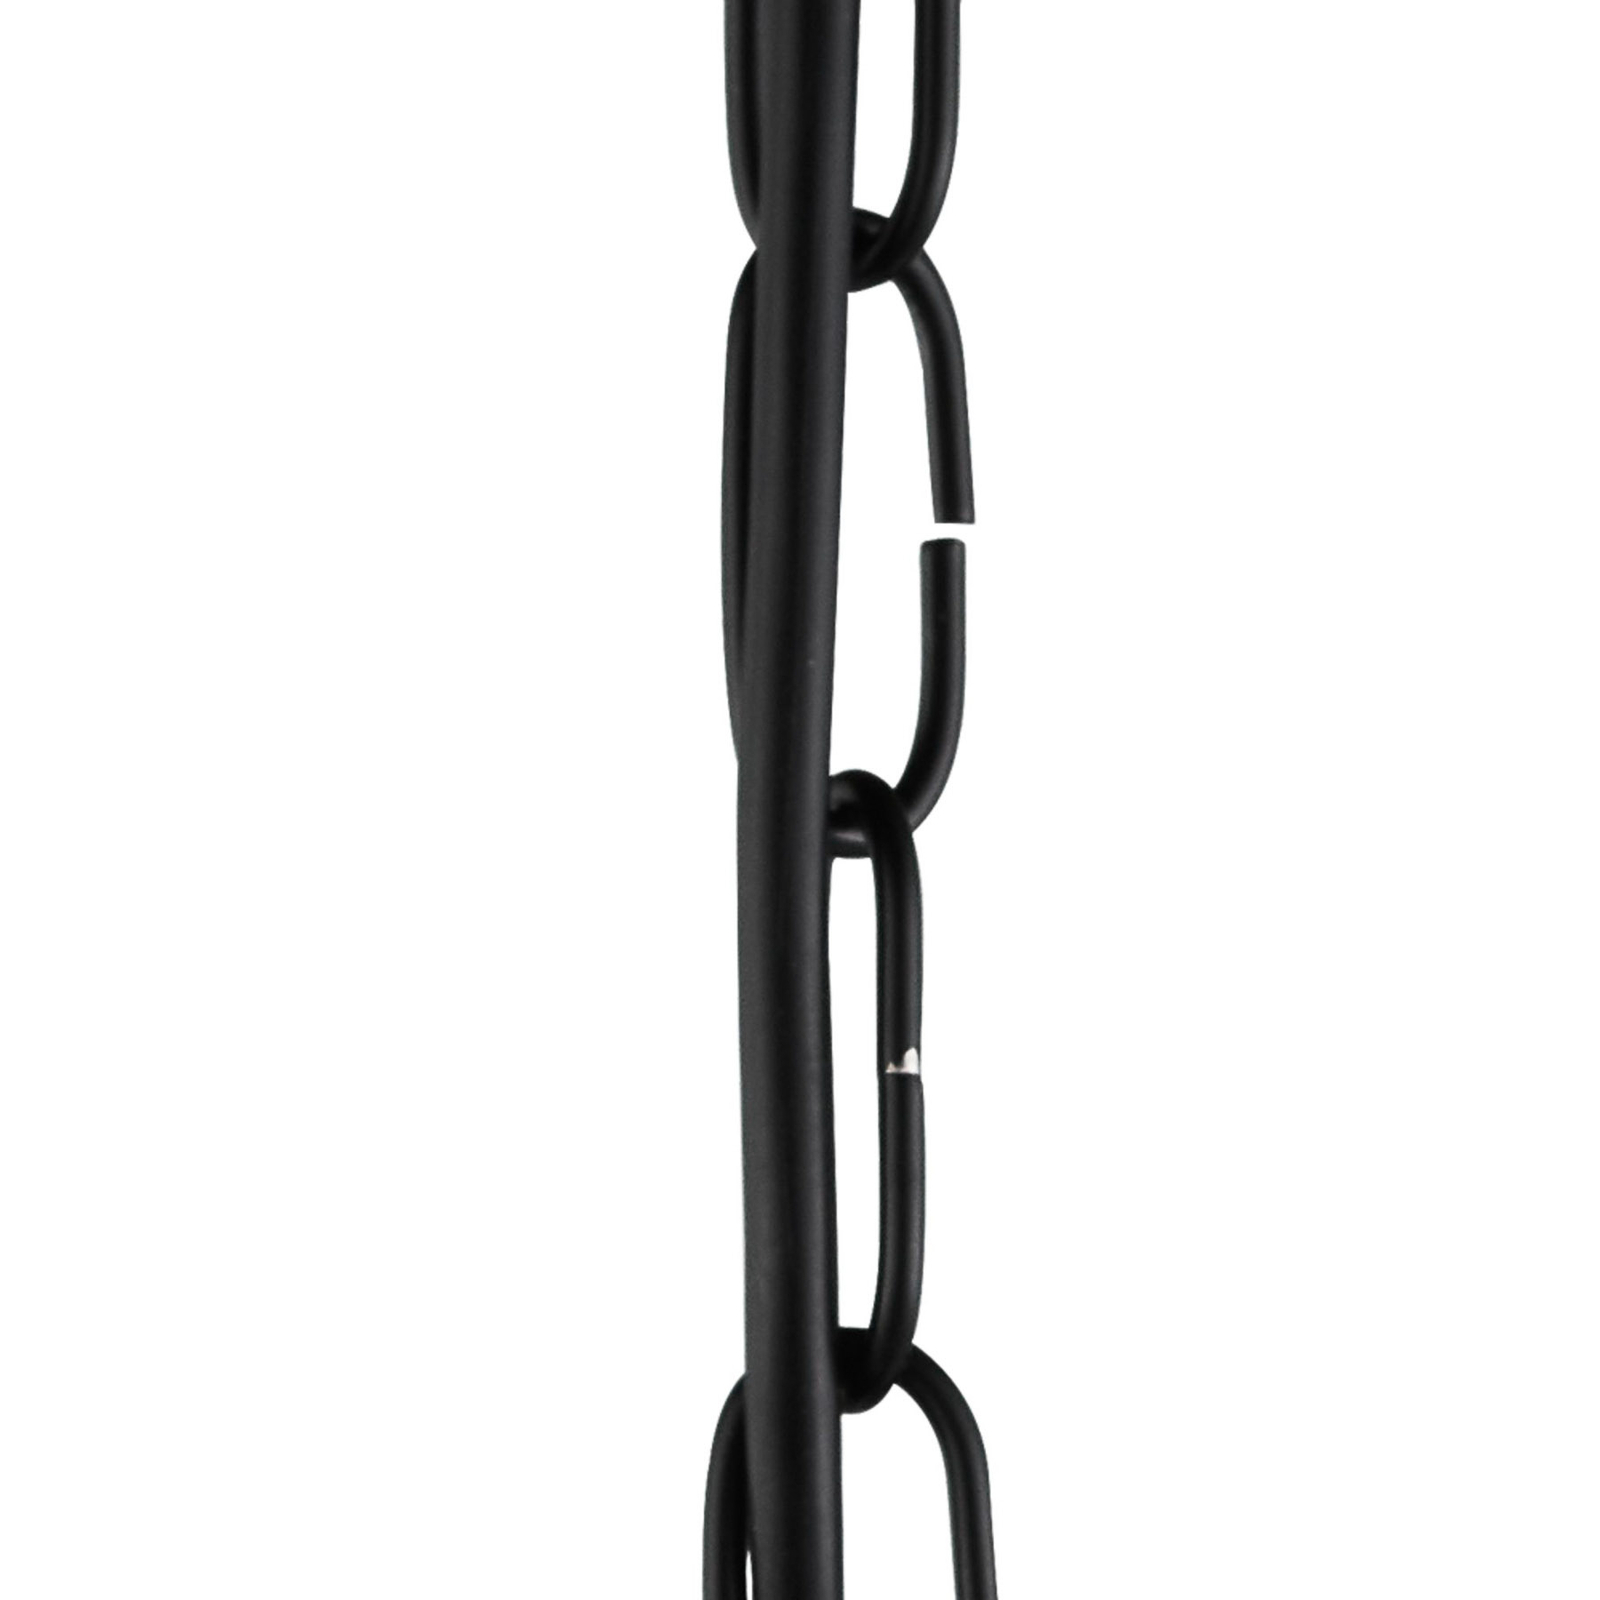 Lámpara colgante Fishnet de metal en negro Ø 45 cm